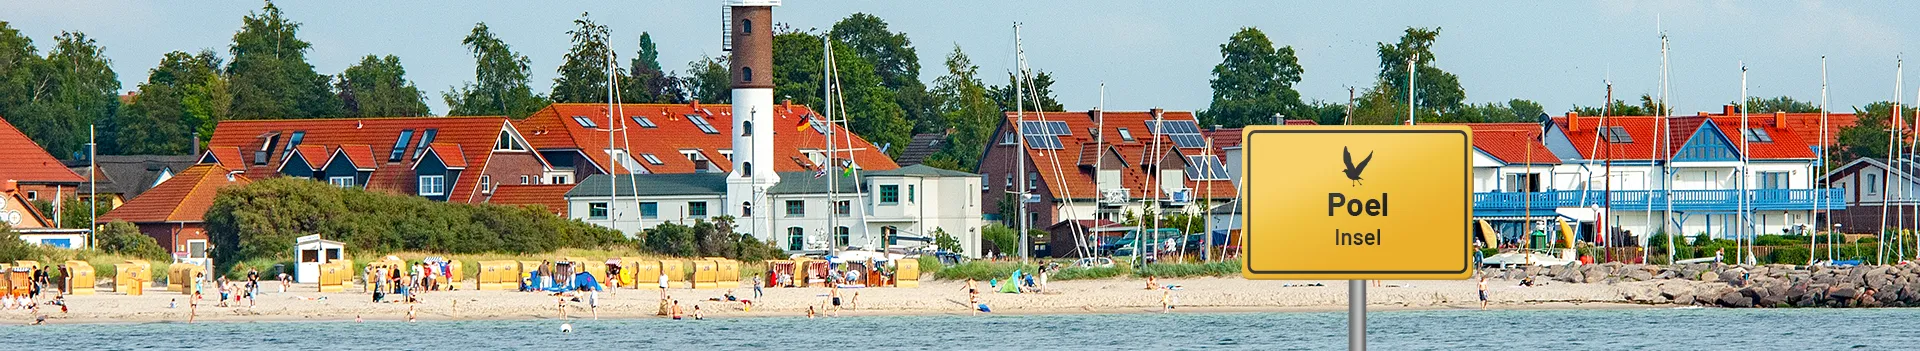 Insel Poel – Strand und Leuchtturm von Timmendorf-Strand